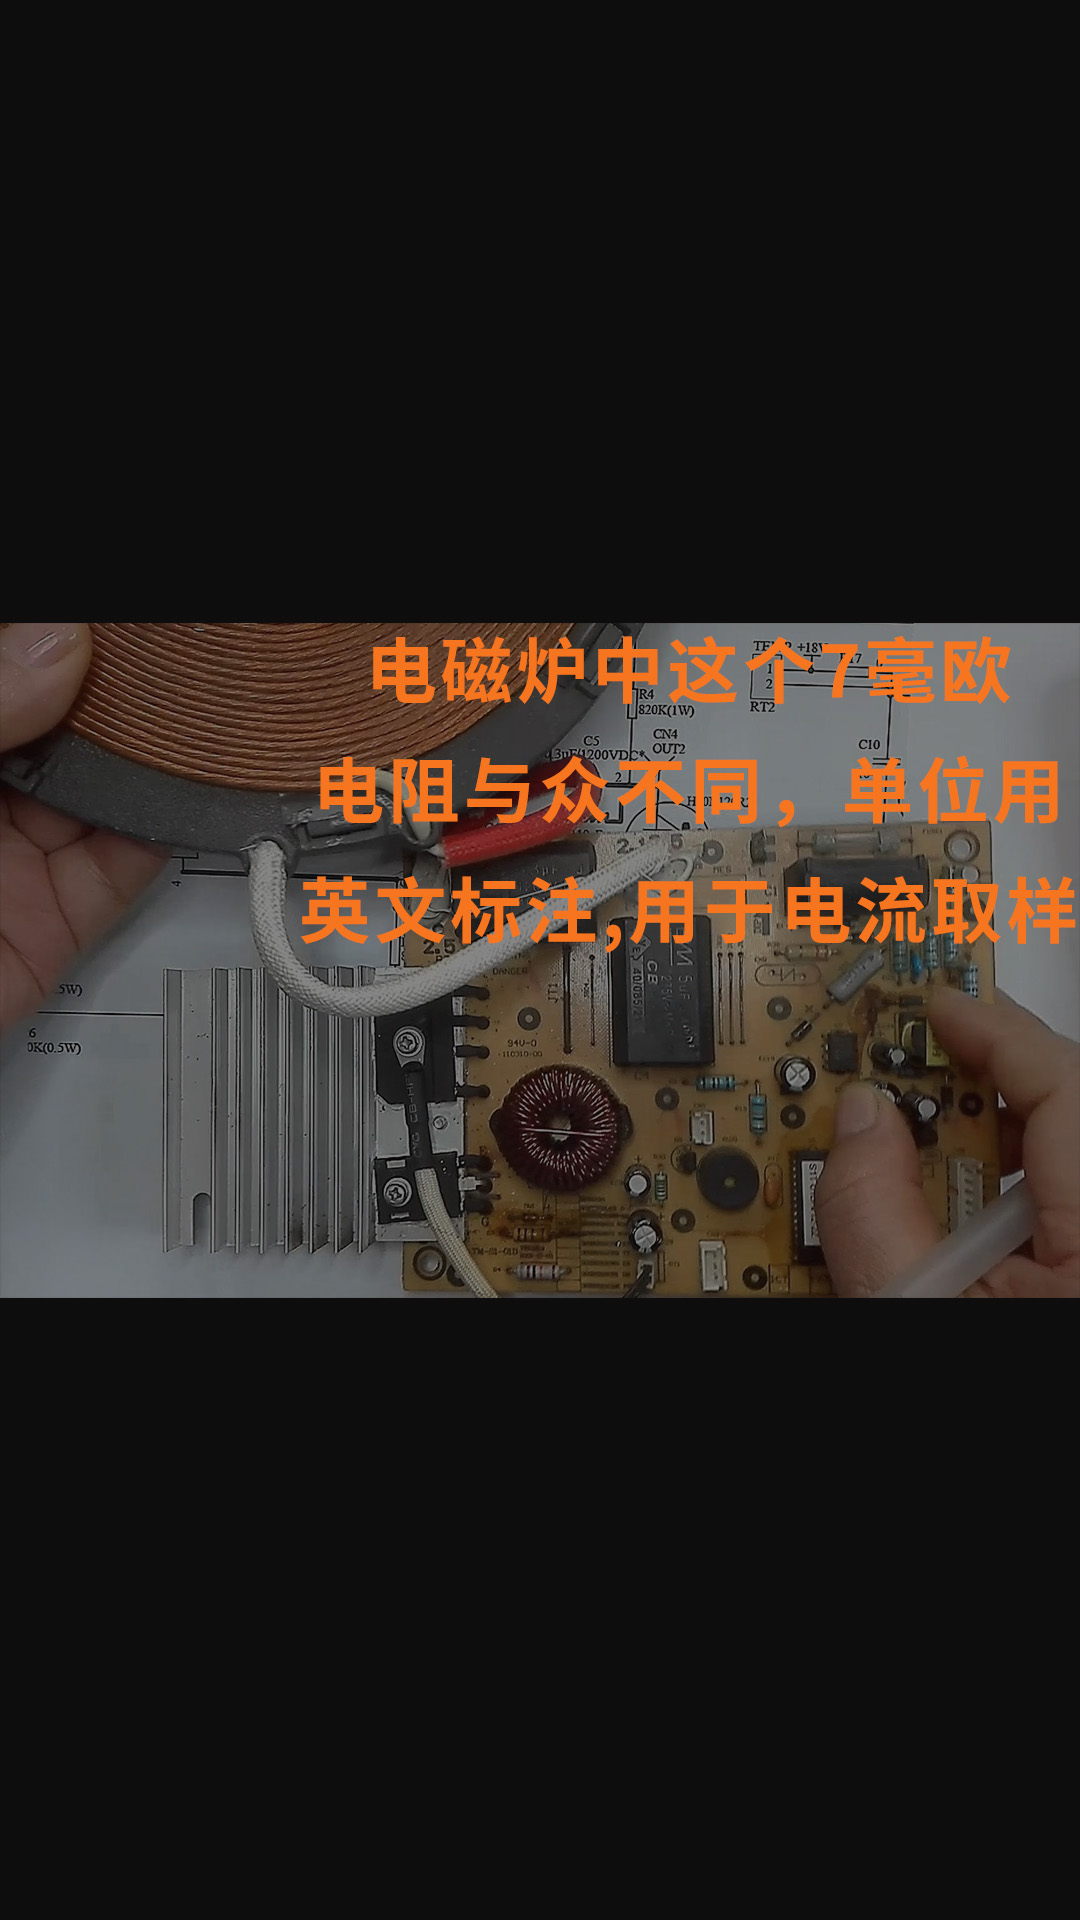 电磁炉中这个7毫欧电阻与众不同，单位用英文标注，用于电流取样